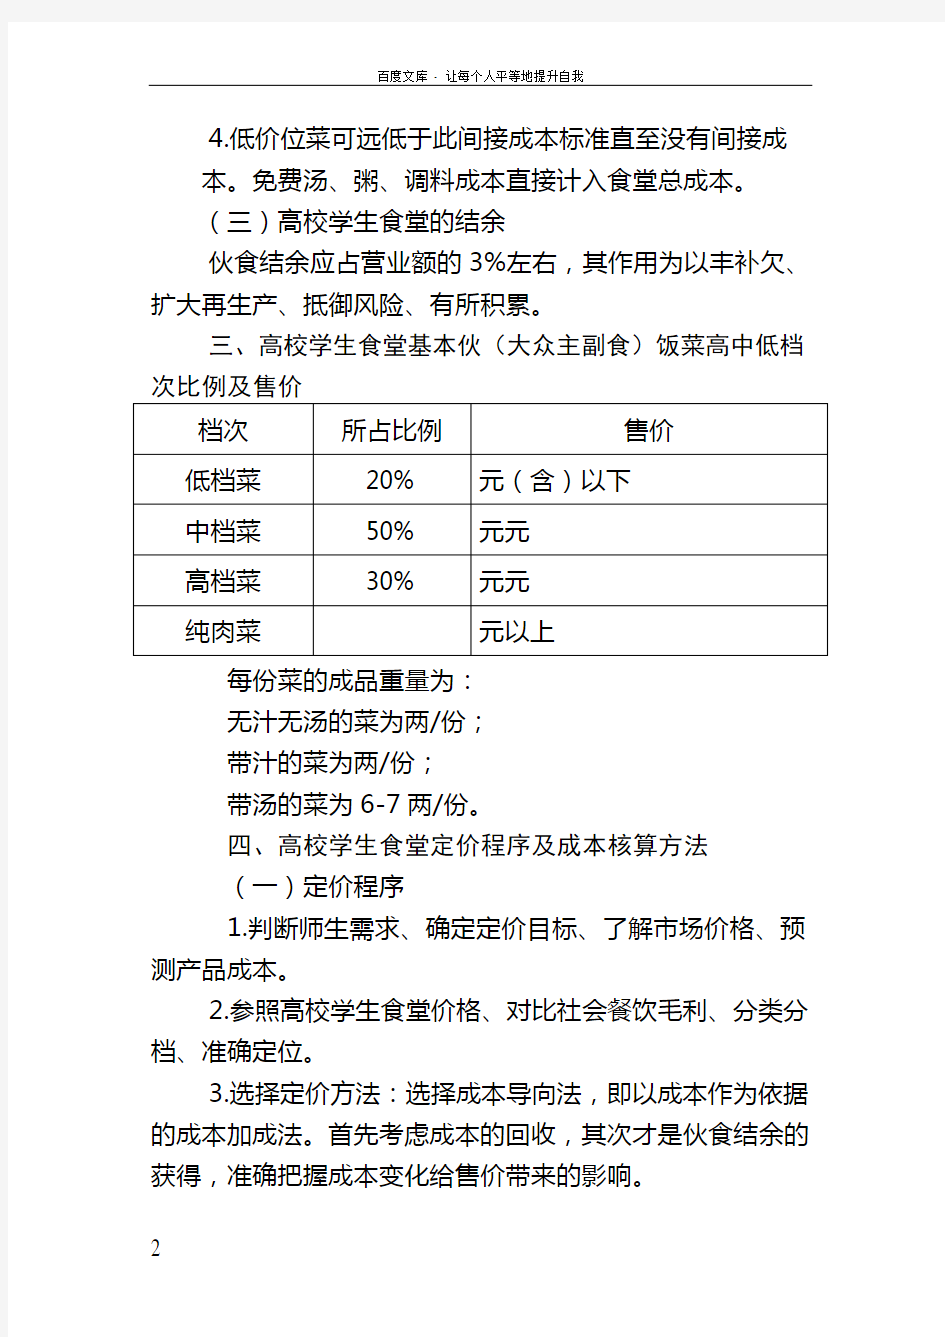 北京高校学生食堂成本核算指导标准